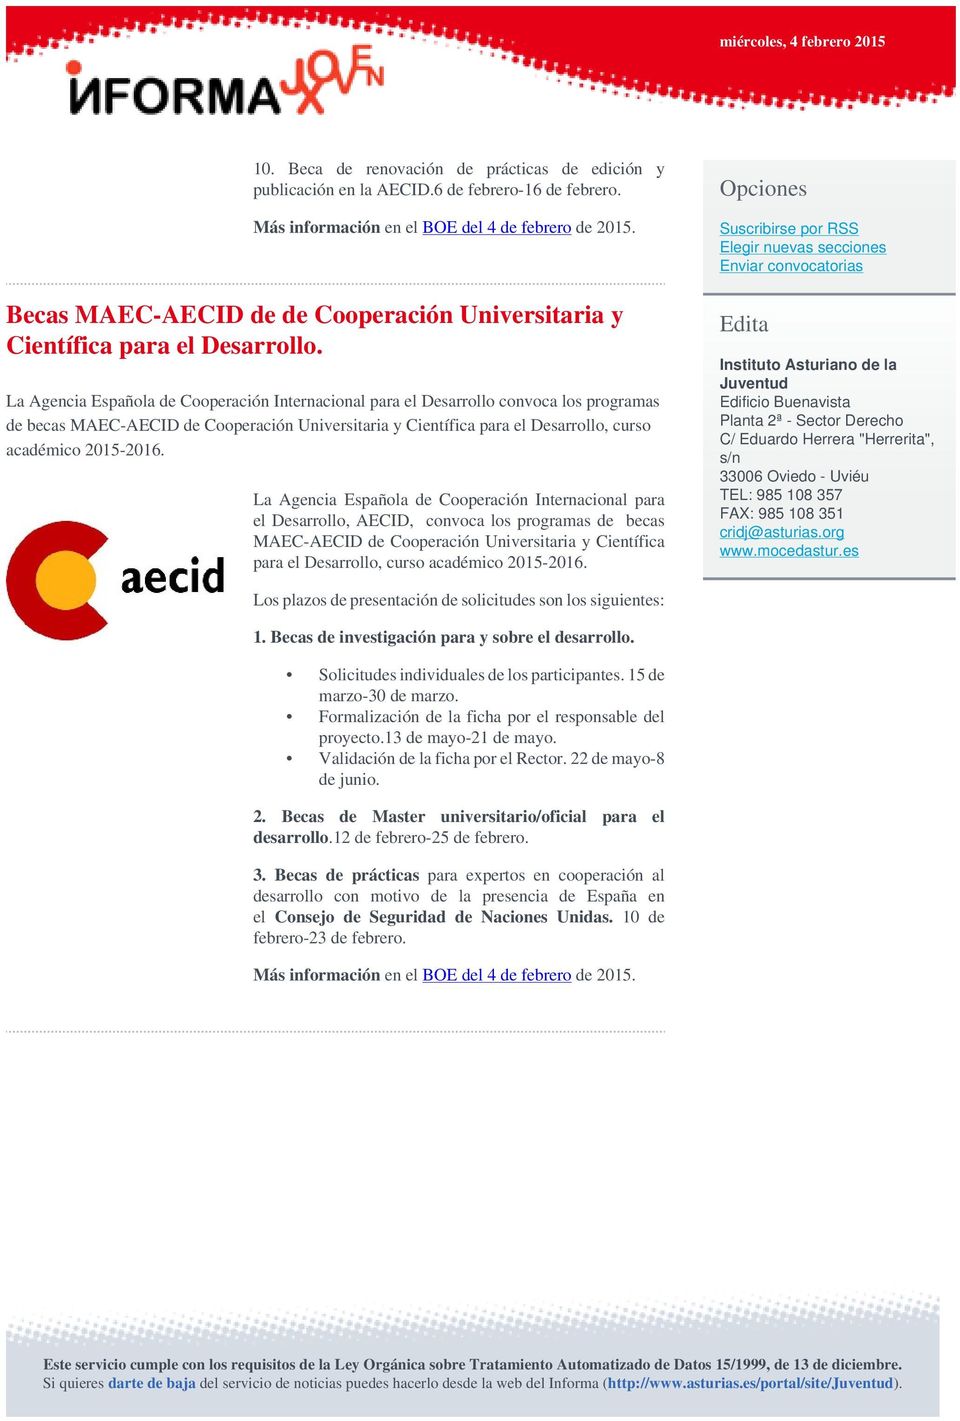 La Agencia Española de Cooperación Internacional para el Desarrollo convoca los programas de becas MAEC-AECID de Cooperación Universitaria y Científica para el Desarrollo, curso académico 2015-2016.